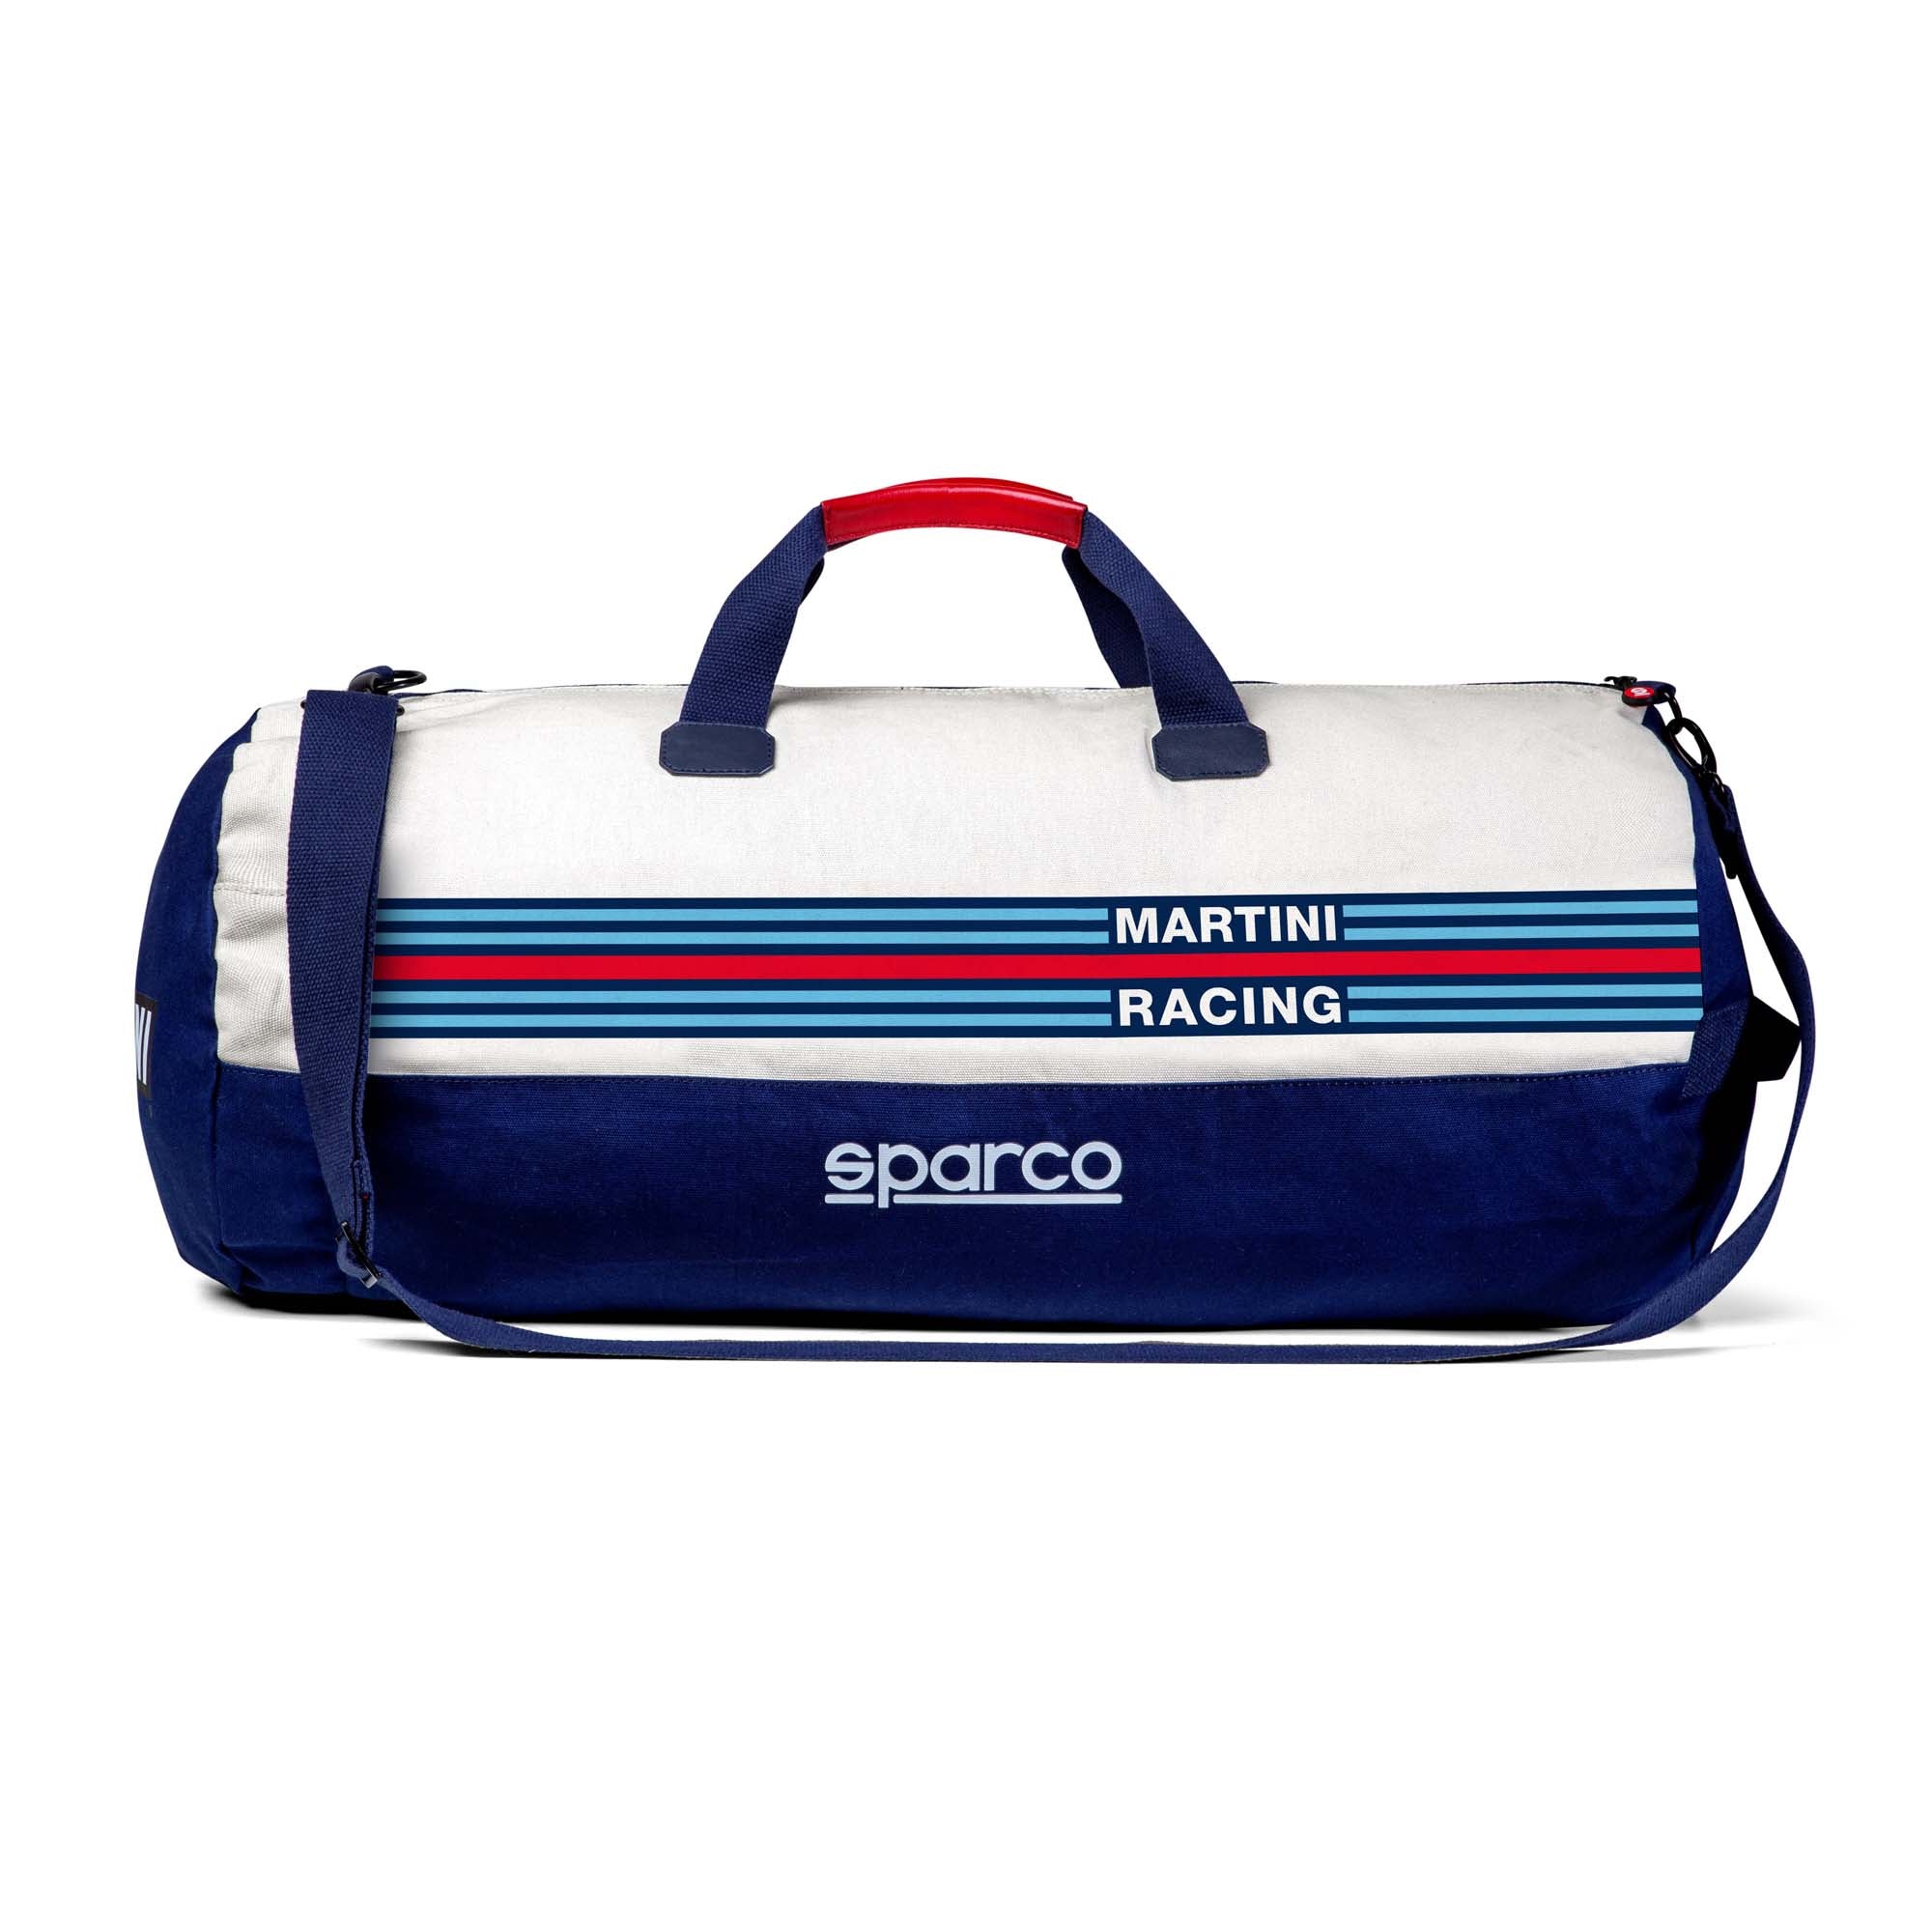 Sparco Martini Sportbag Duffle Bag